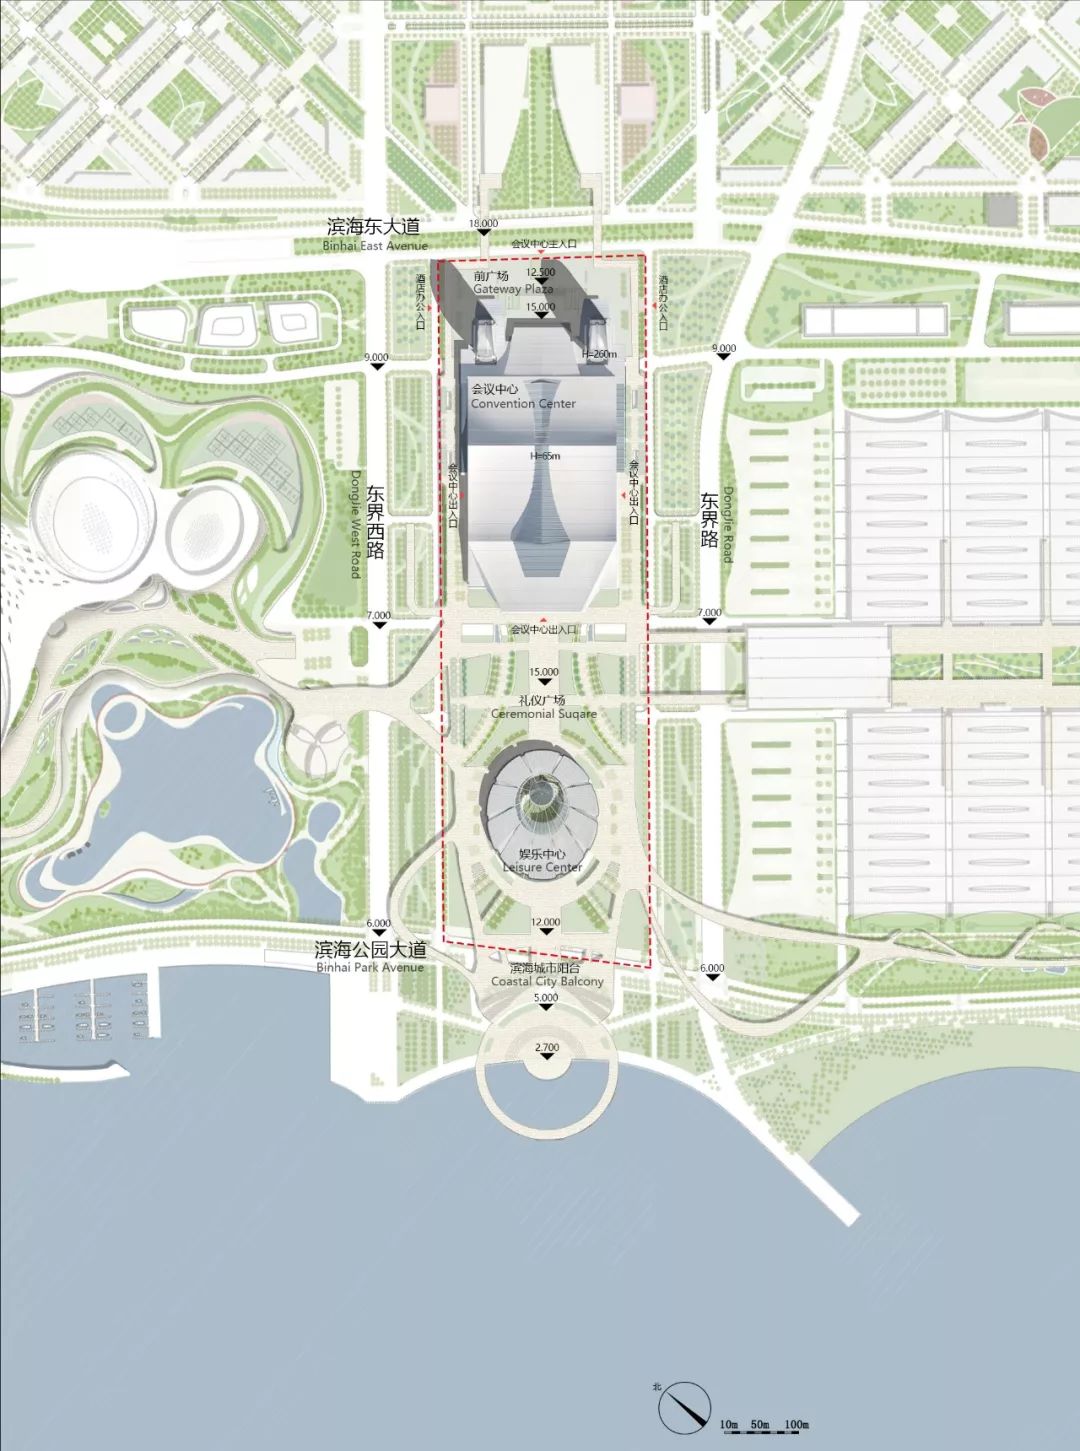 厦门市“一场两馆、新会展中心” 建筑方案设计及片区概念性城市设计中标方案/筑境设计